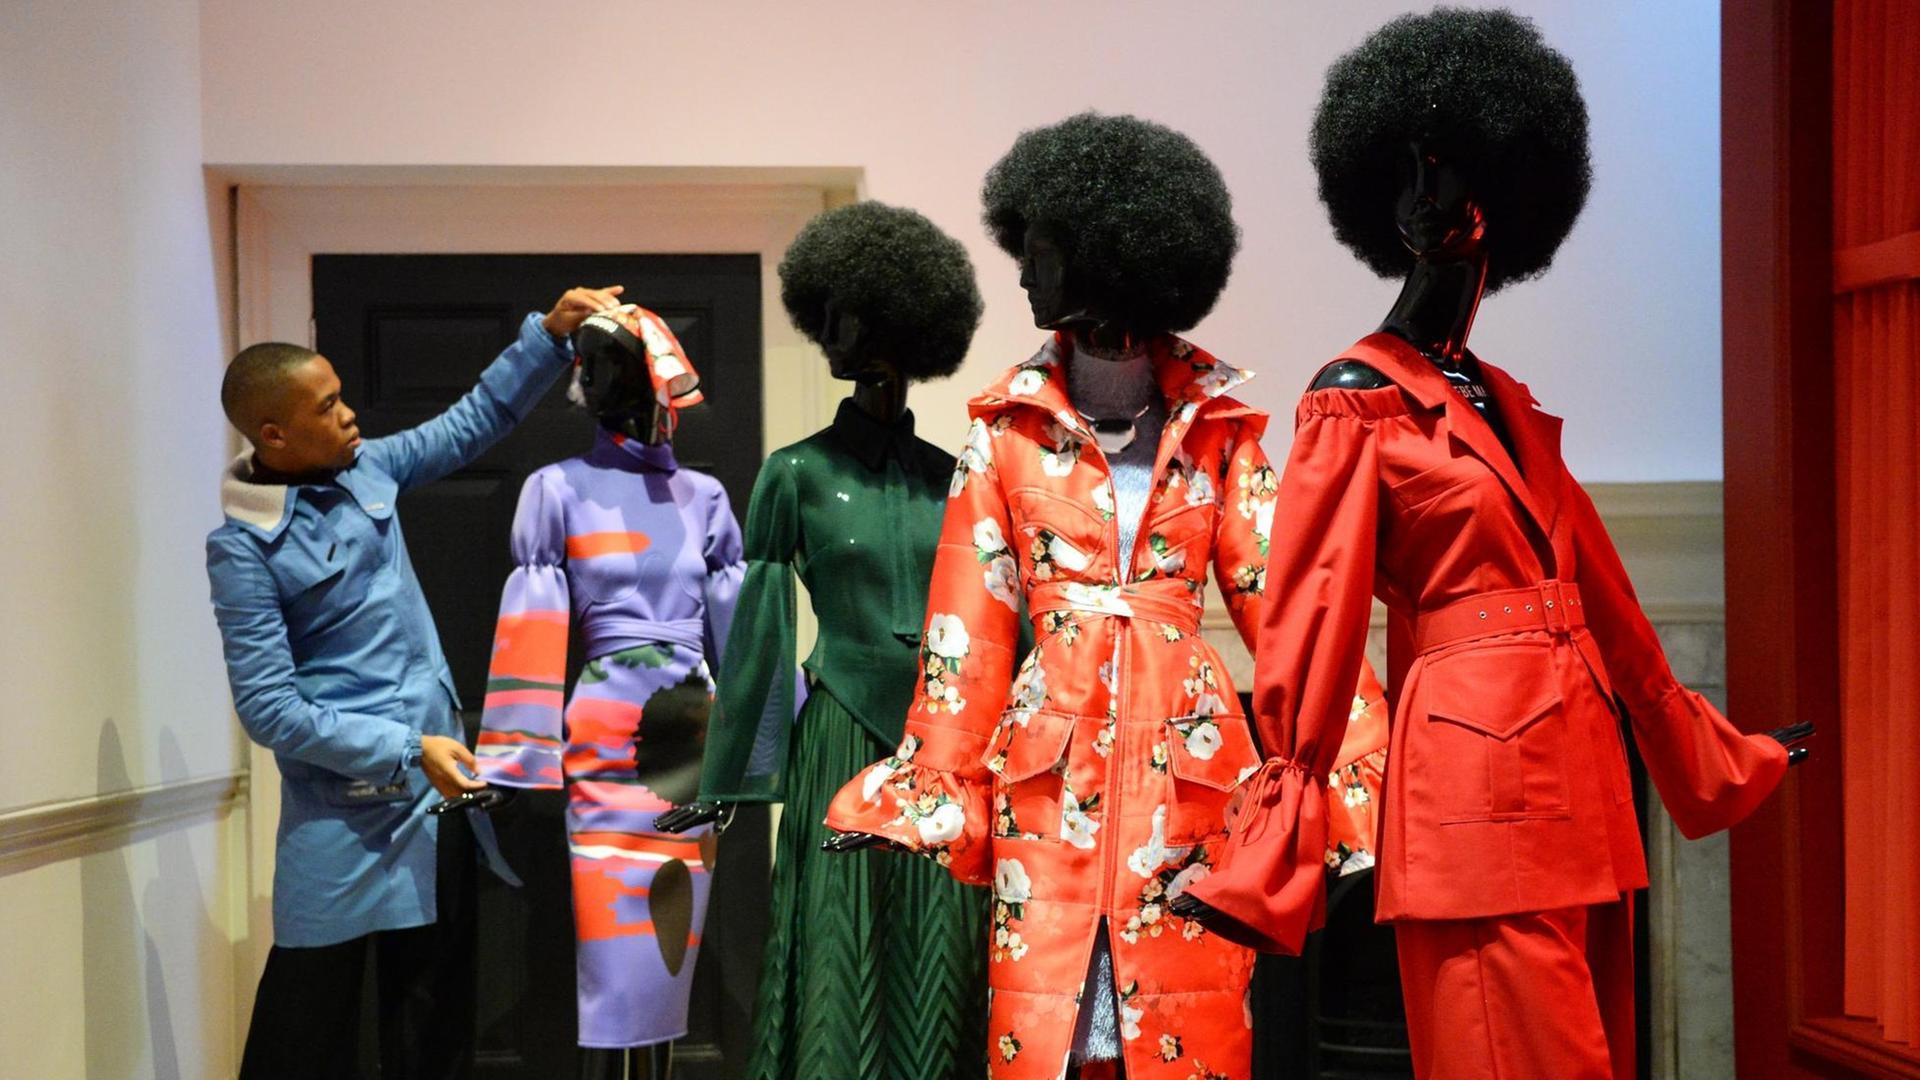 Thebe Magugu mit seiner Installation African Studies, die zusammen mit weiteren Designern aus 16 Ländern für das International Fashion Showcase im Somerset House in London geschaffen wurden.